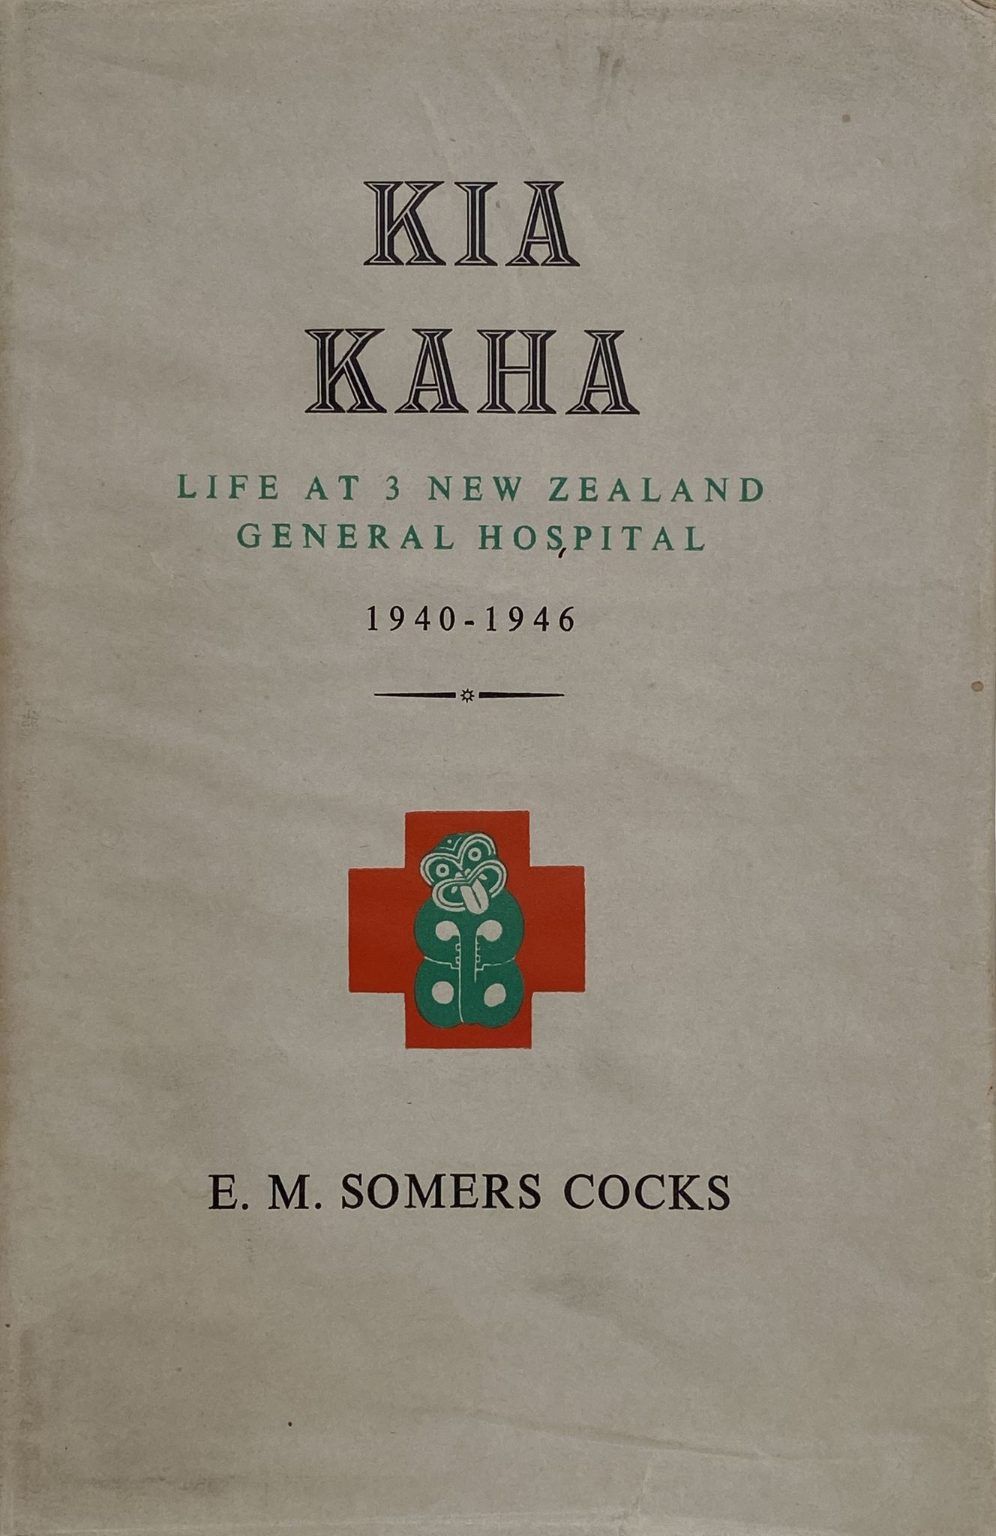 KIA KAHA: Life at 3 New Zealand General Hospital 1940-1946